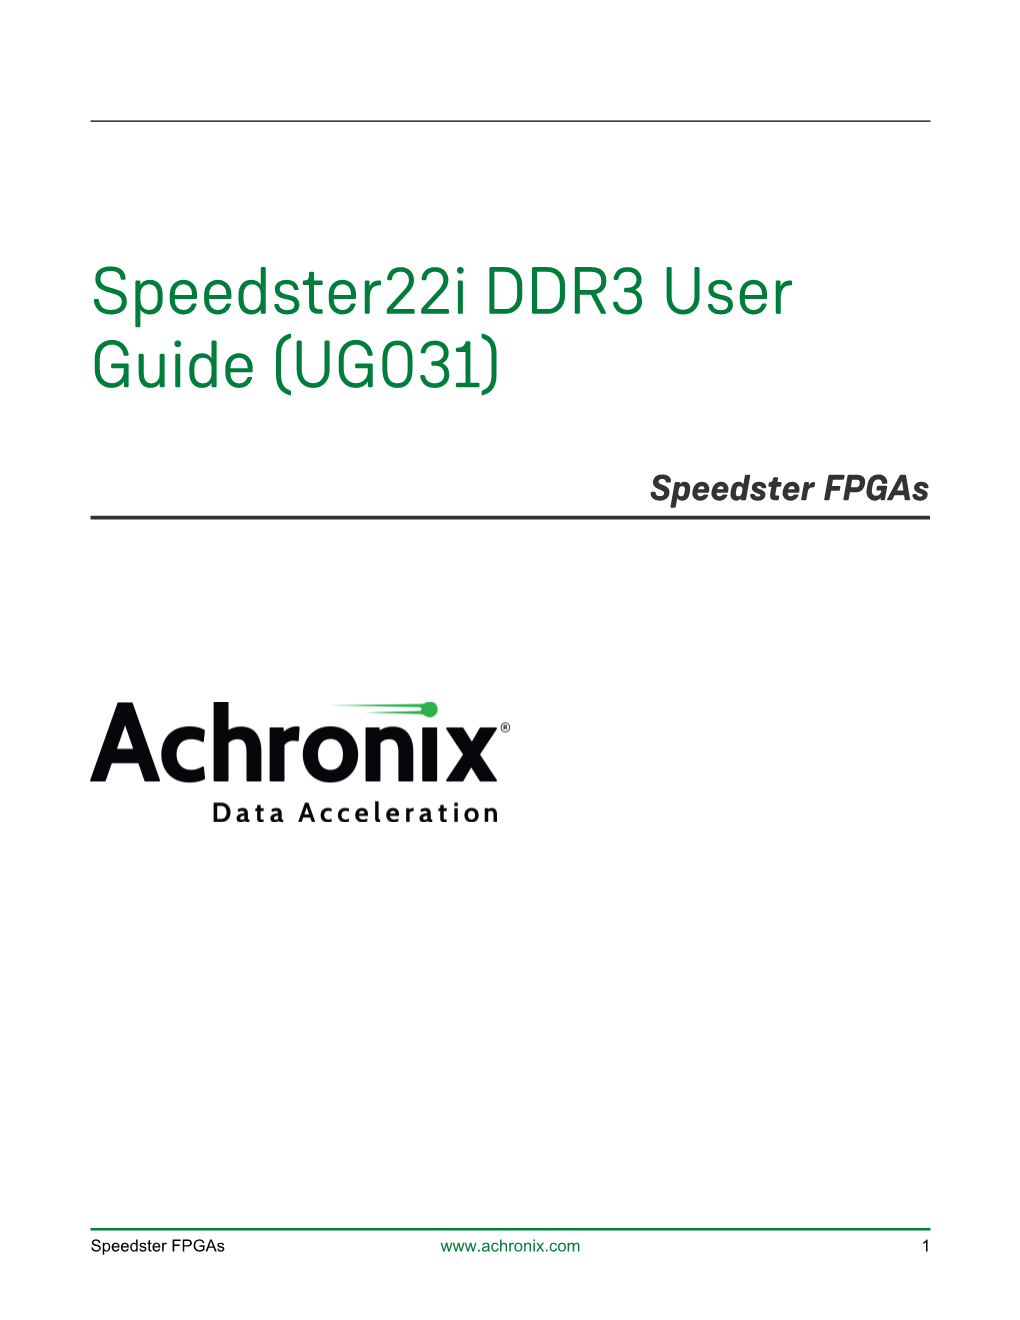 Speedster22i DDR3 User Guide (UG031)